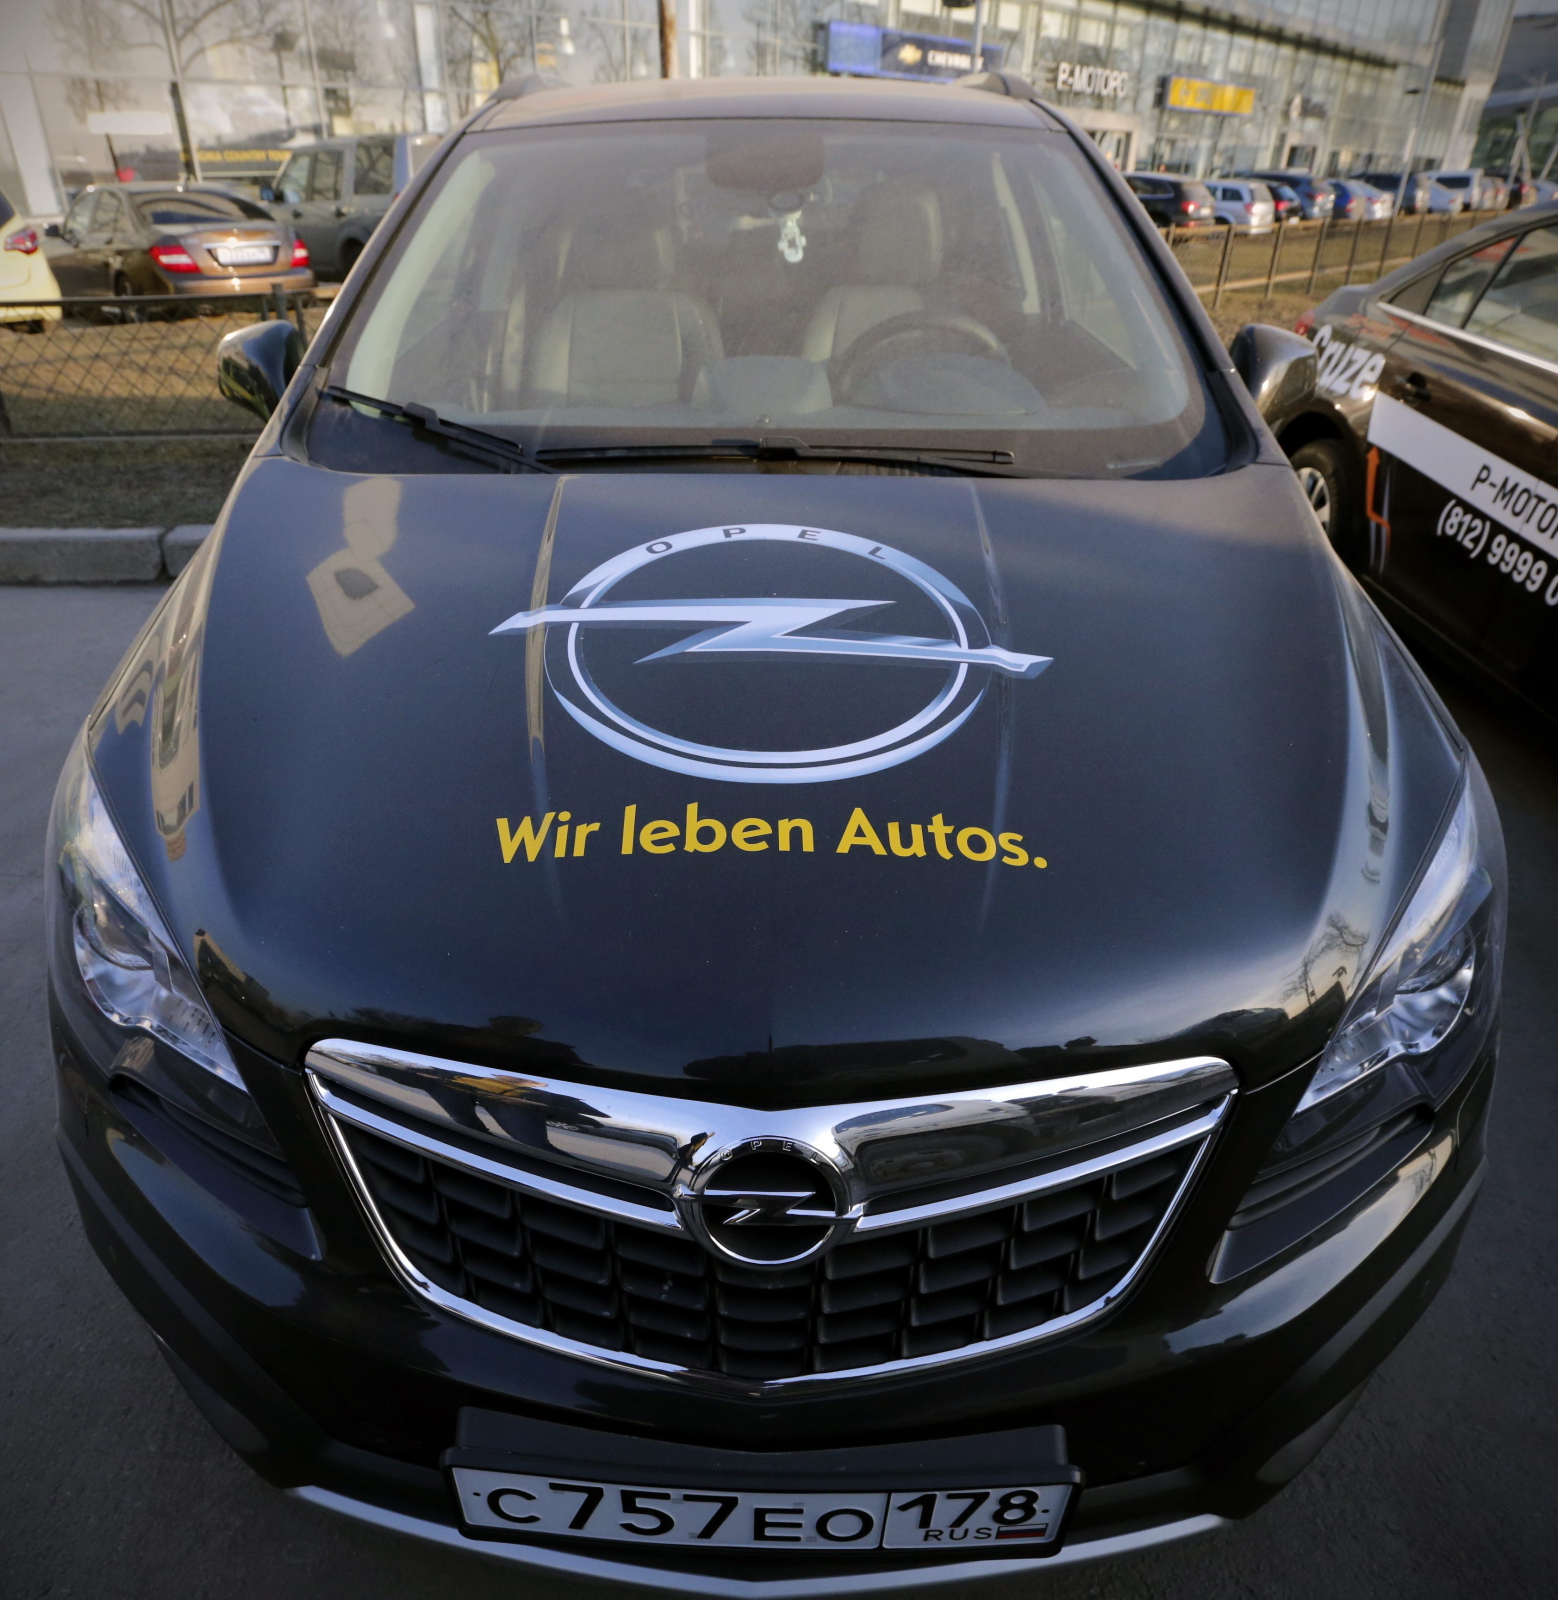 Opel wycofuje się z Rosji